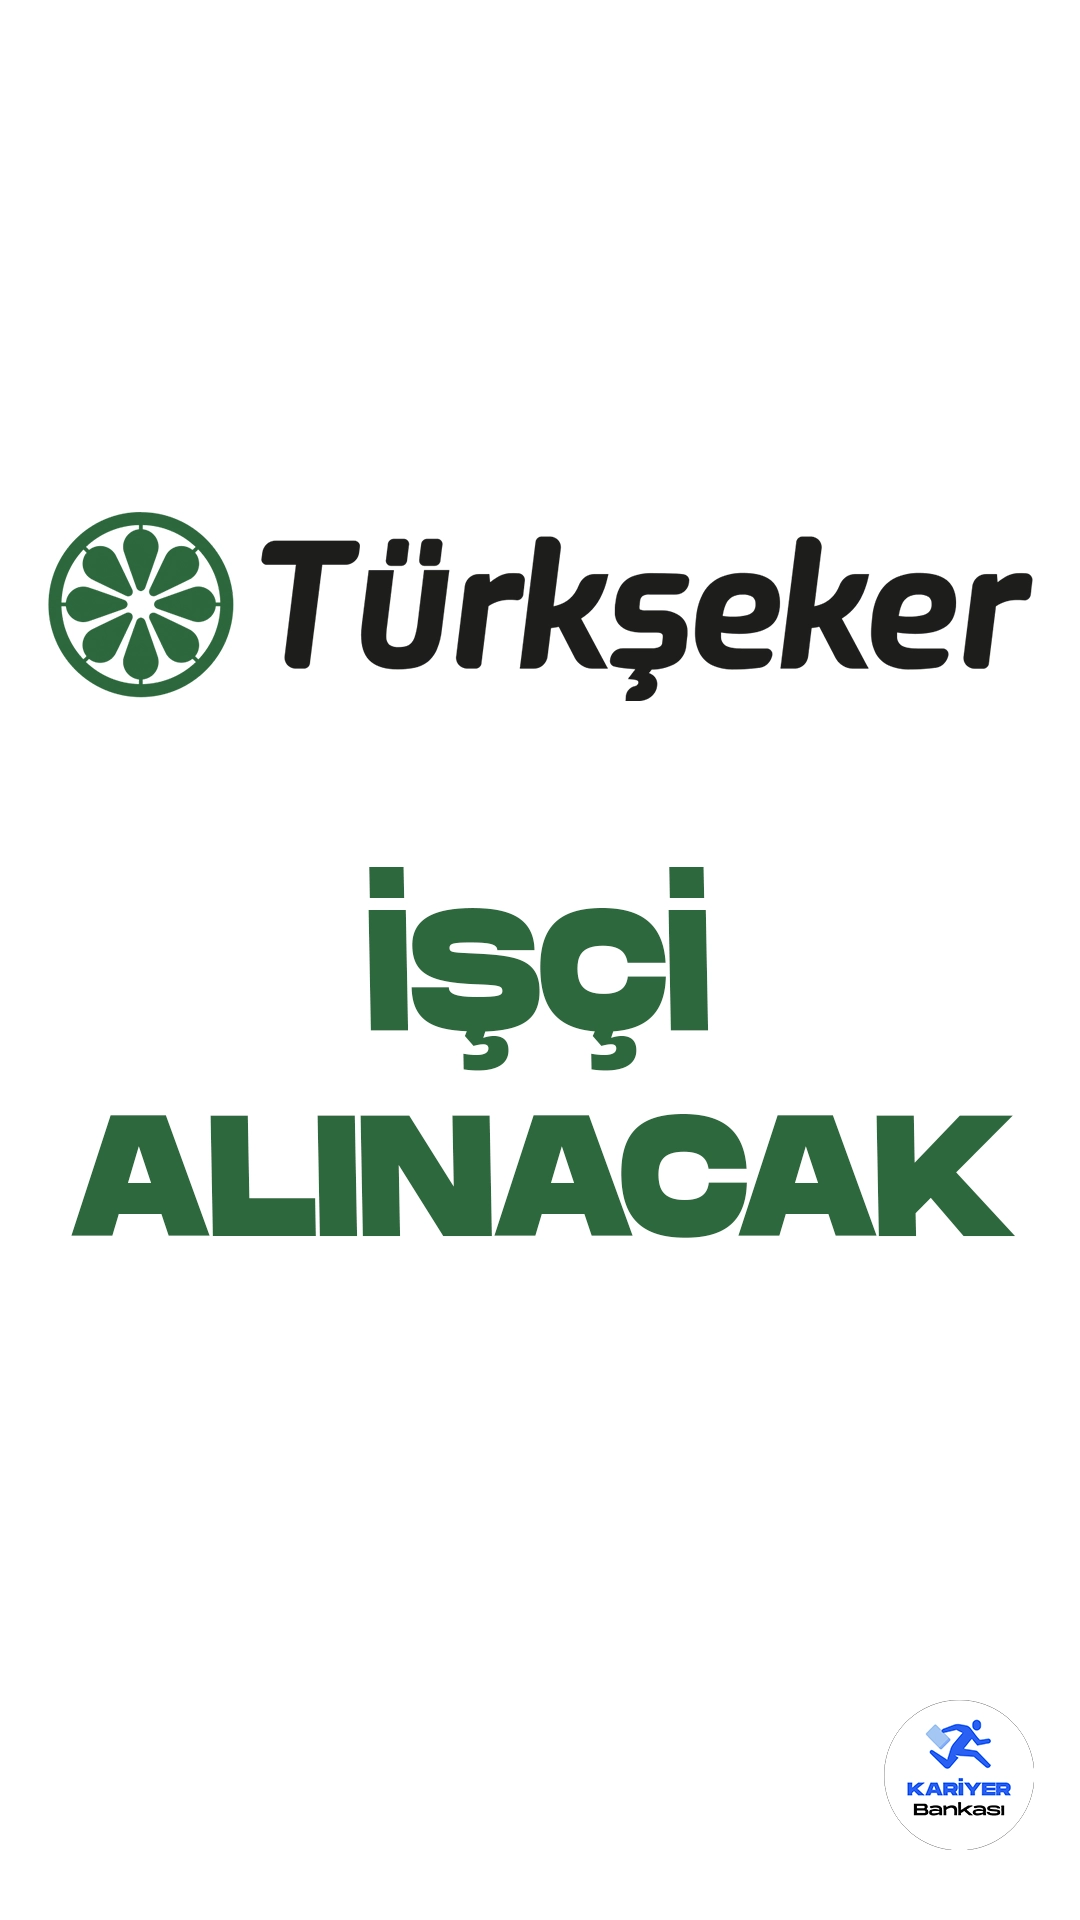 Türkşeker 115 Sürekli İşçi Alımı Yapacak. Türkşeker işçi alımı duyurusu yayımlandı. Cumhurbaşkanlığı SBB'de yayımlanan duyuruya göre, Türkiye Şeker Fabrikaları A.Ş.'ye birçok farklı ünvanda olmak üzere 115 sürekli işçi alımı yapılacak.